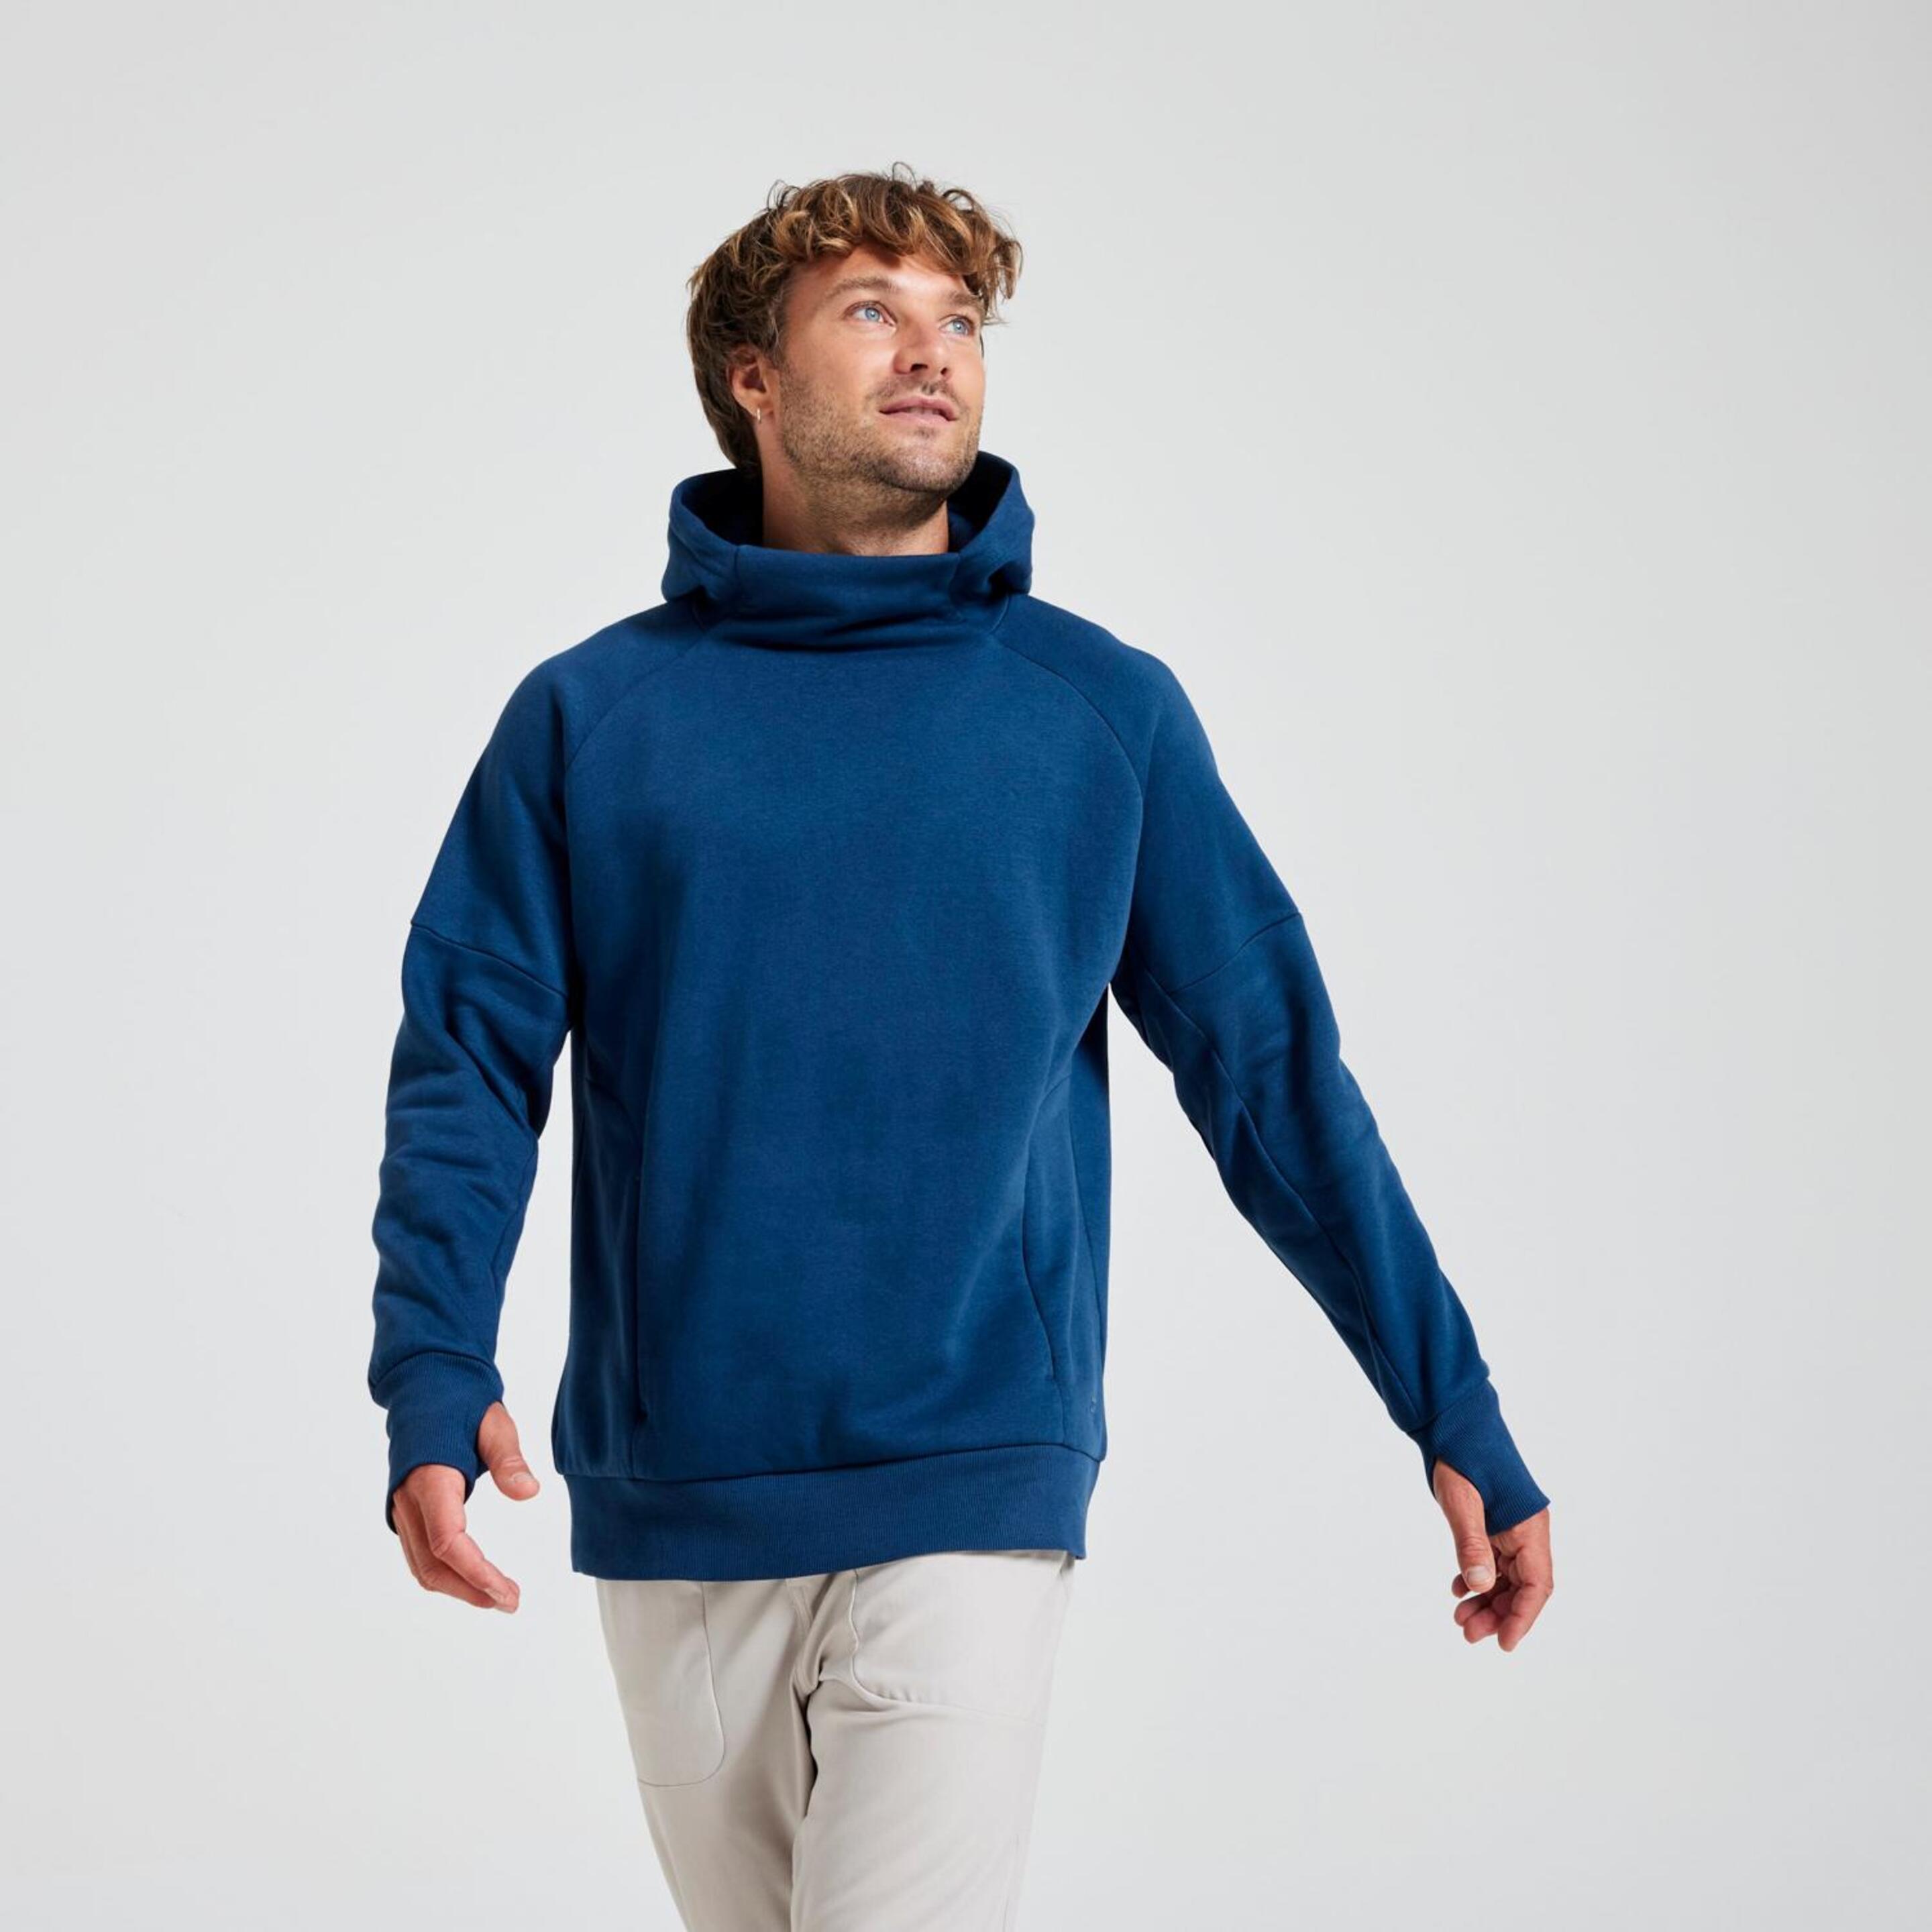 Doone Confort Relax - azul - Sweatshirt Capuz Homem